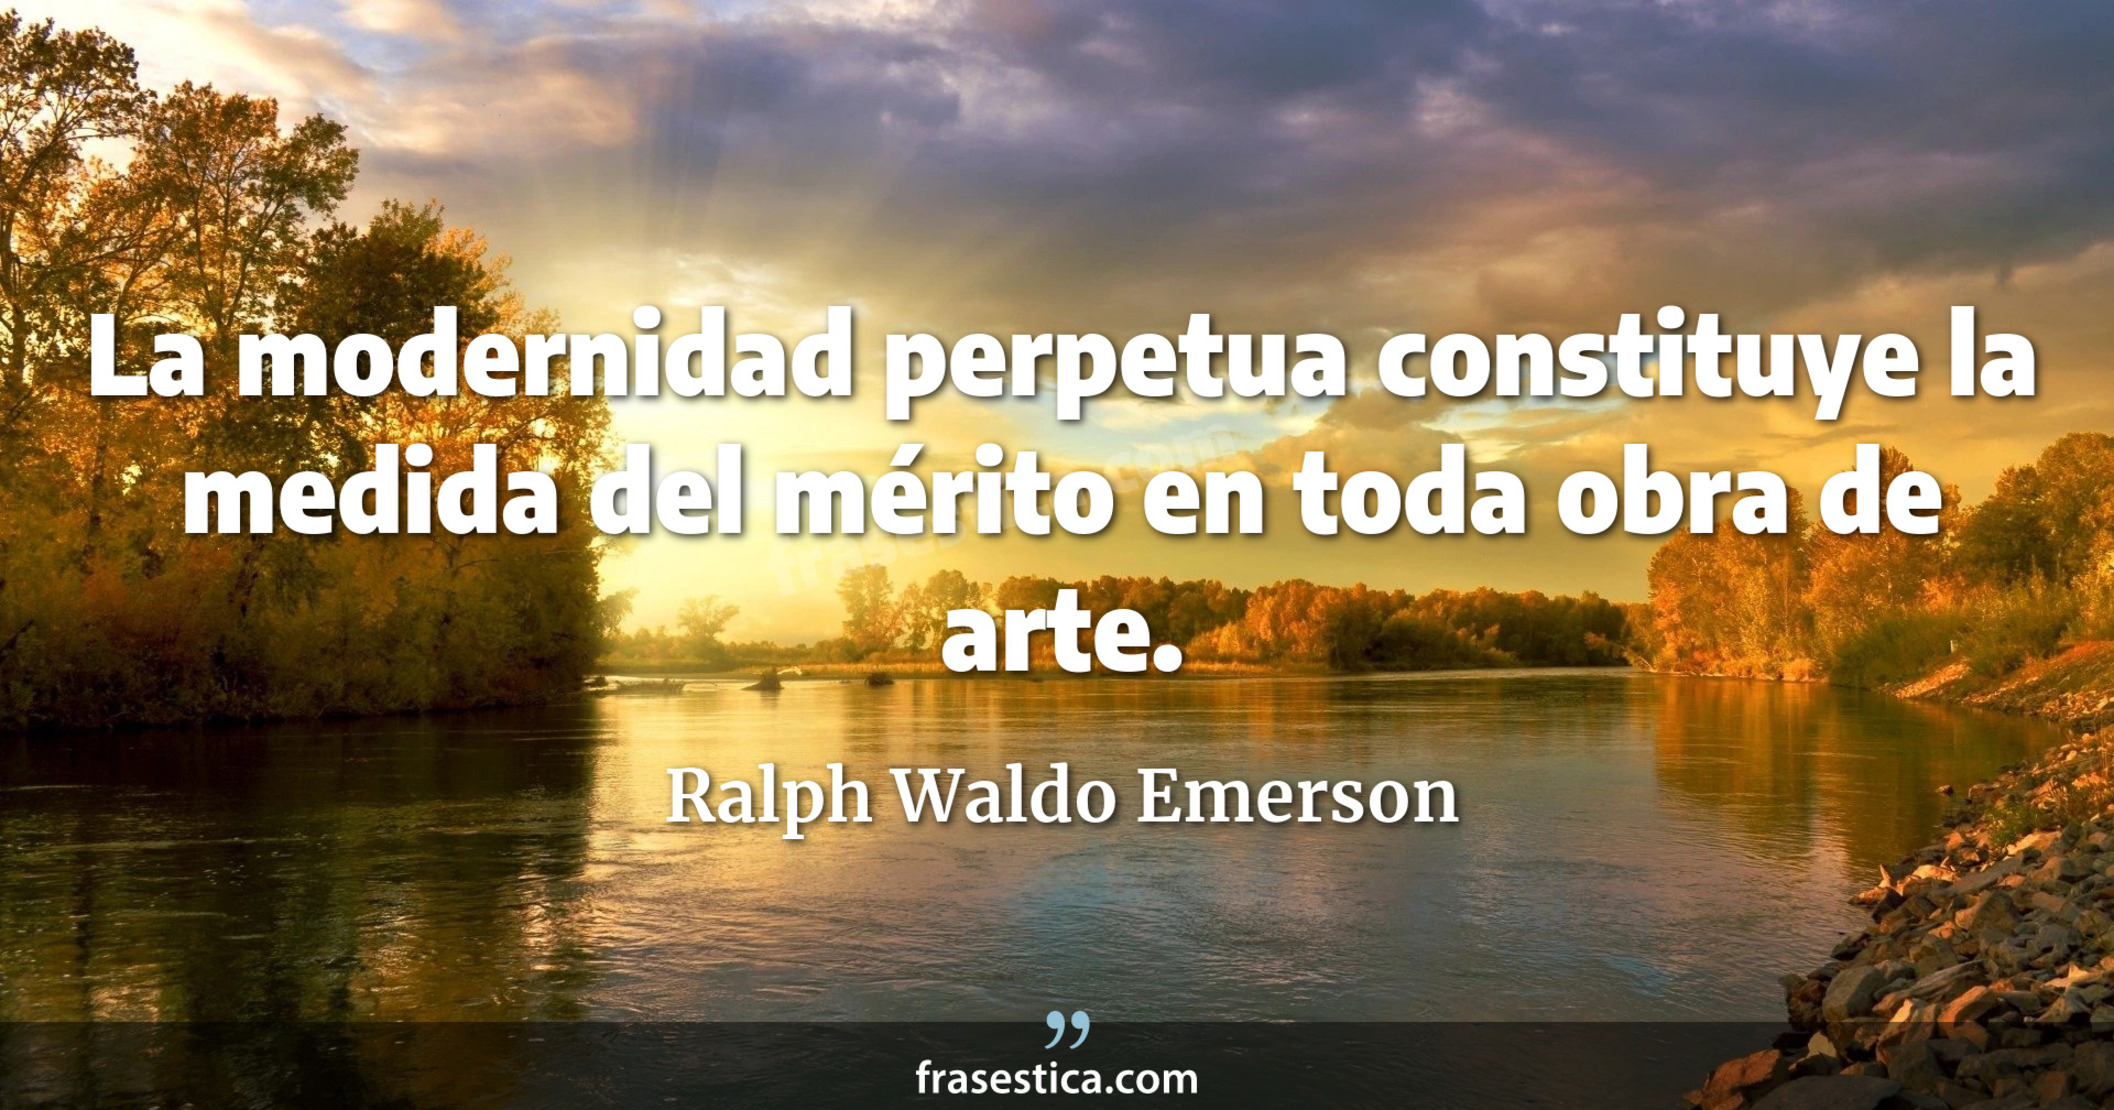 La modernidad perpetua constituye la medida del mérito en toda obra de arte. - Ralph Waldo Emerson